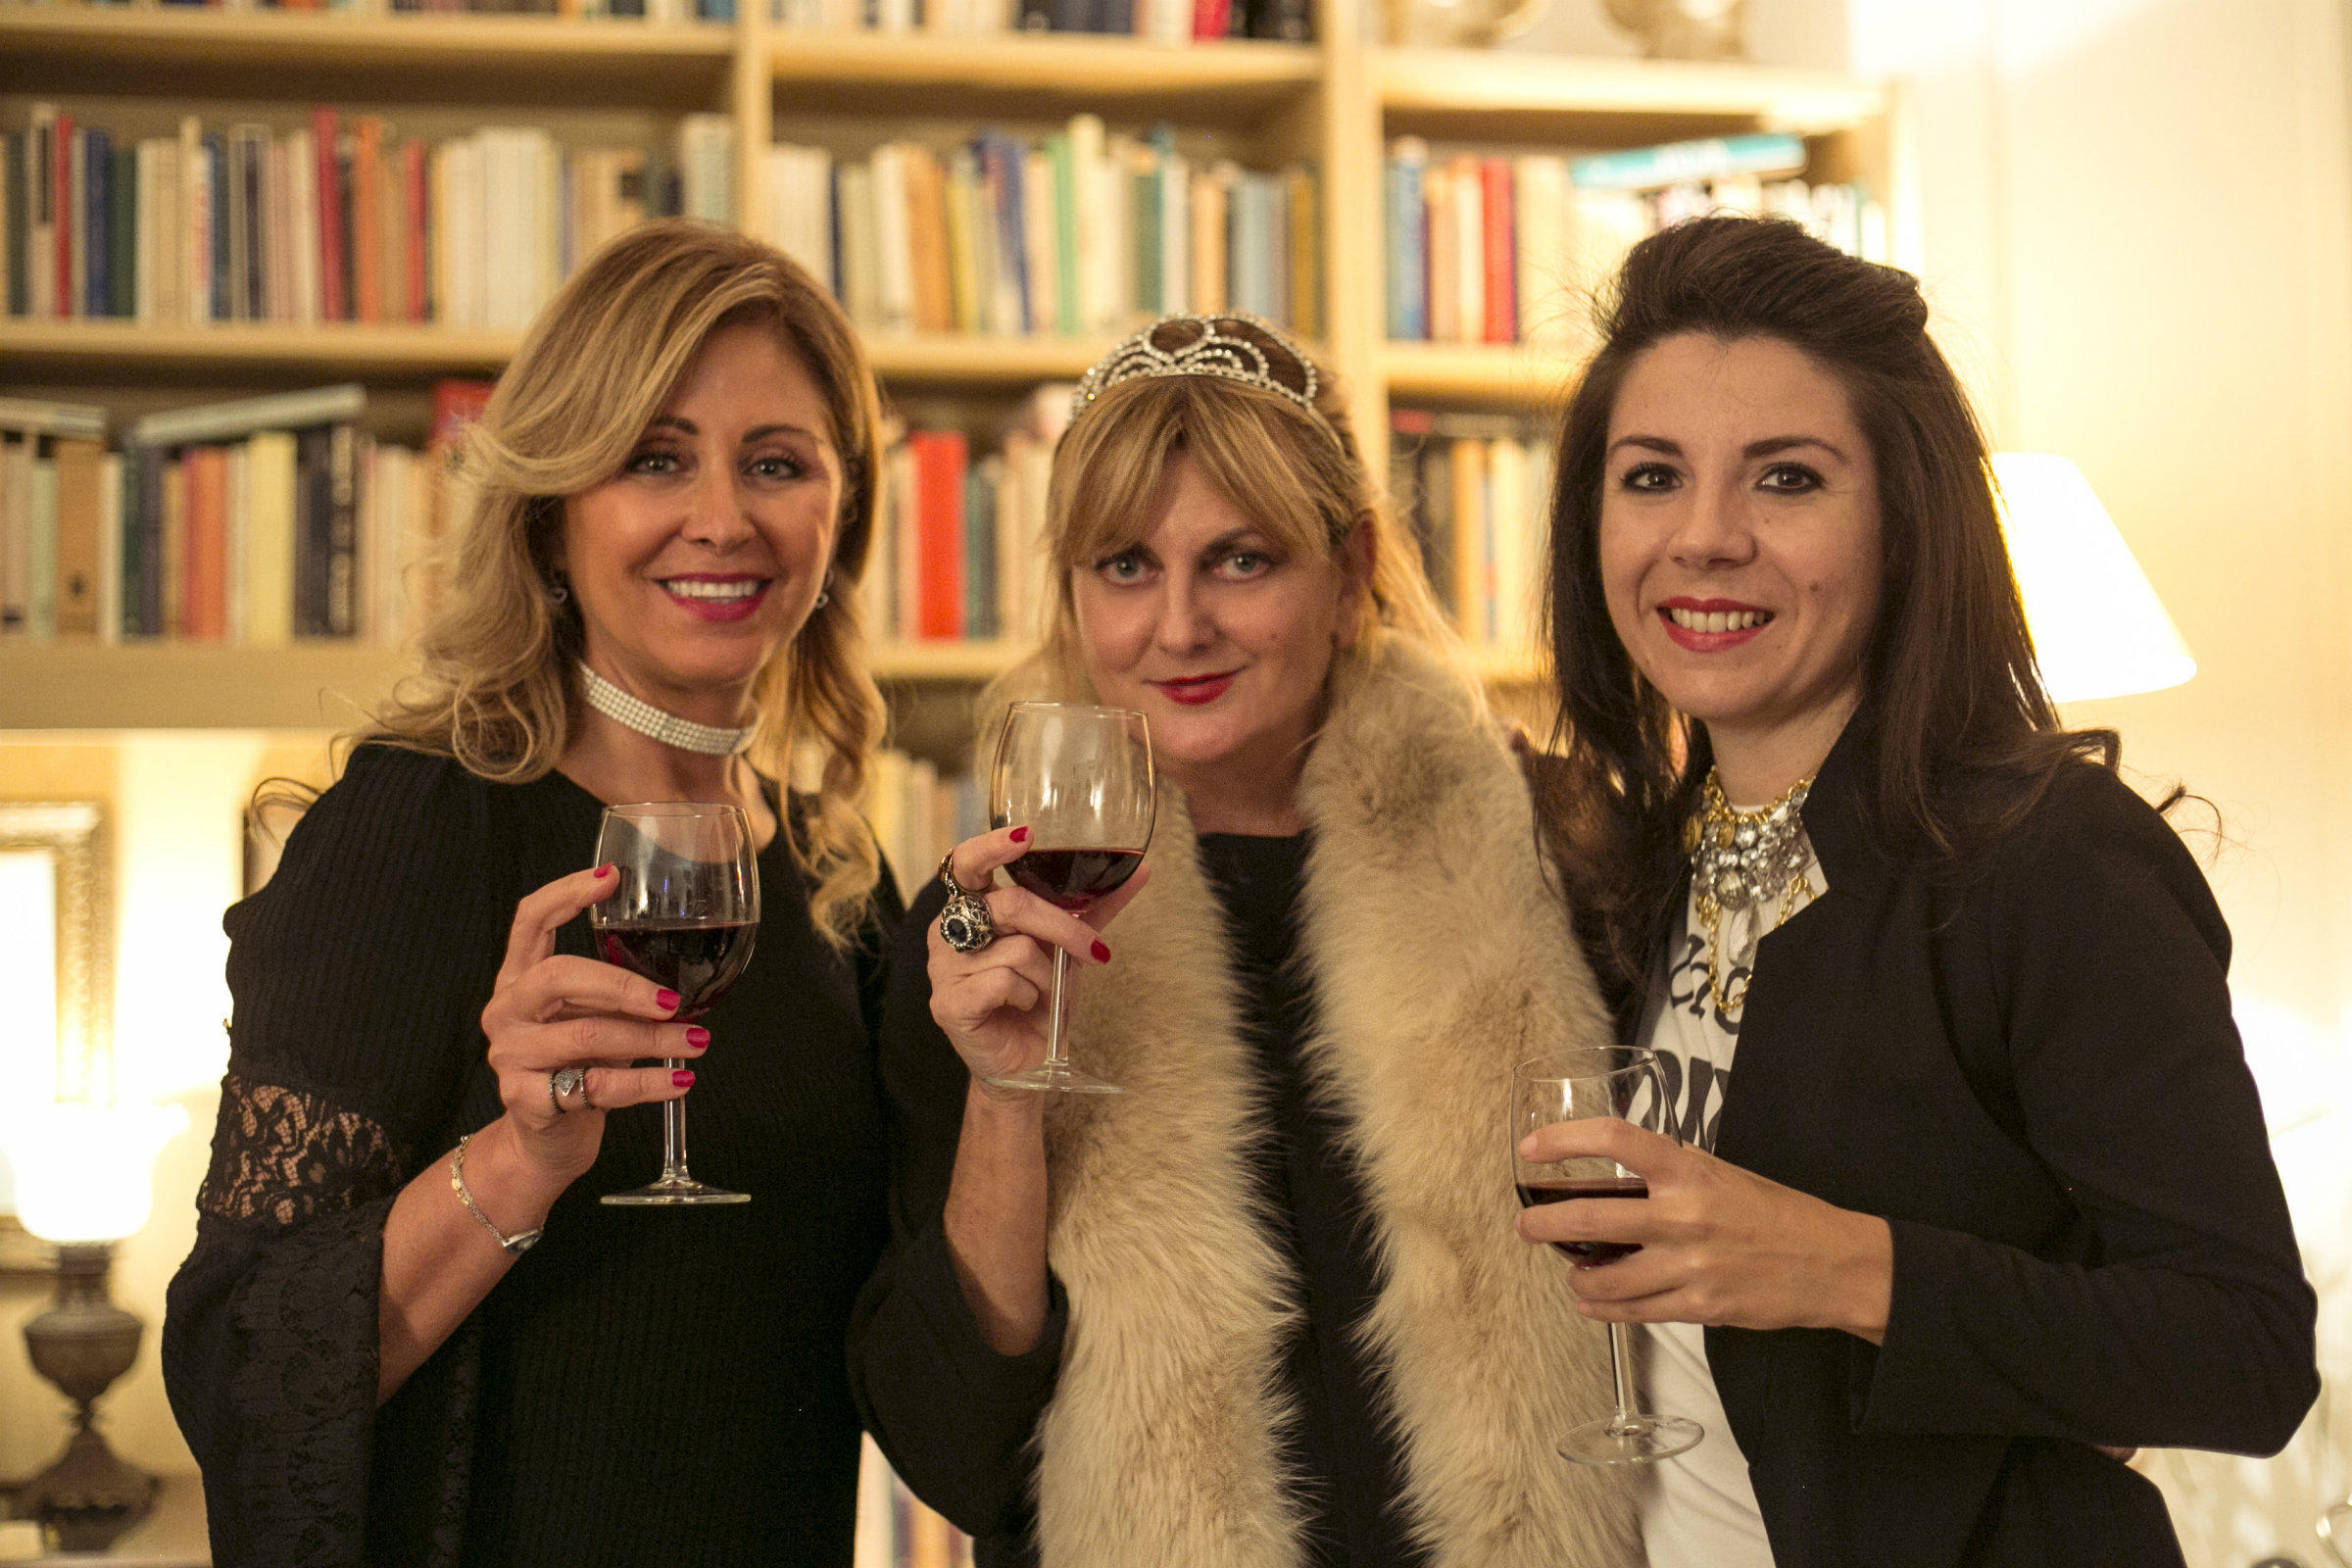 Marina Di Guardo ed Eliselle ospiti al salotto di Patrizia Finucci Gallo per parlare di scrittura femminile